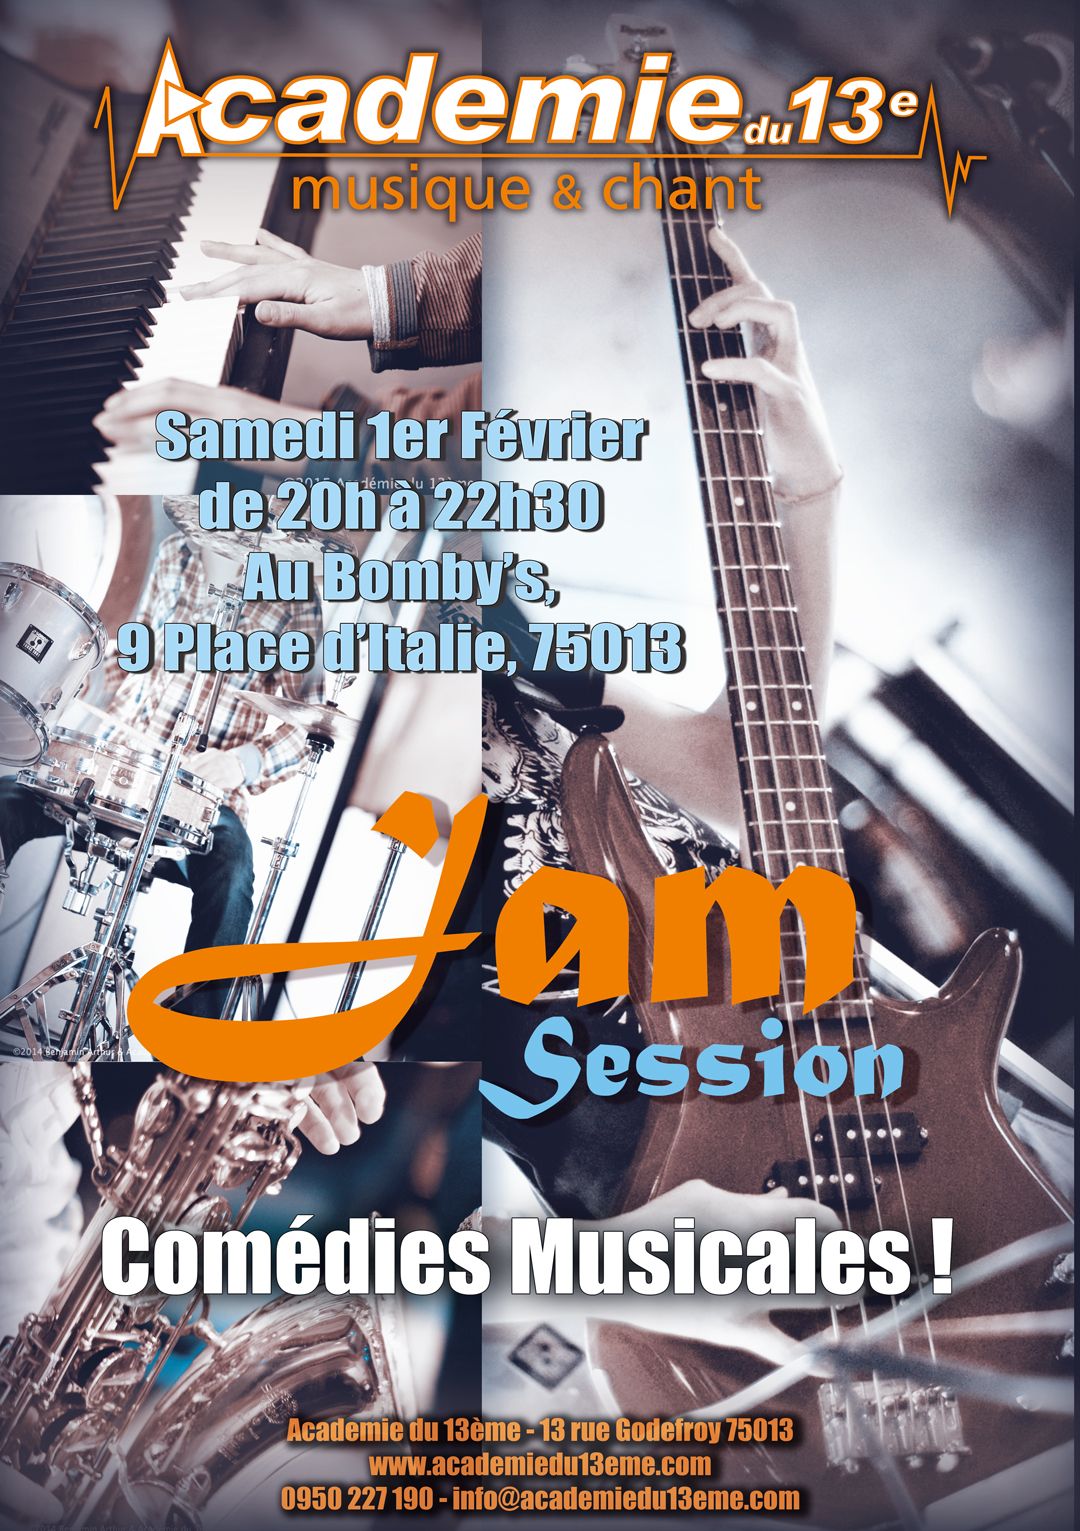 Jam session « Comédies Musicales », Samedi 1er Février 2020